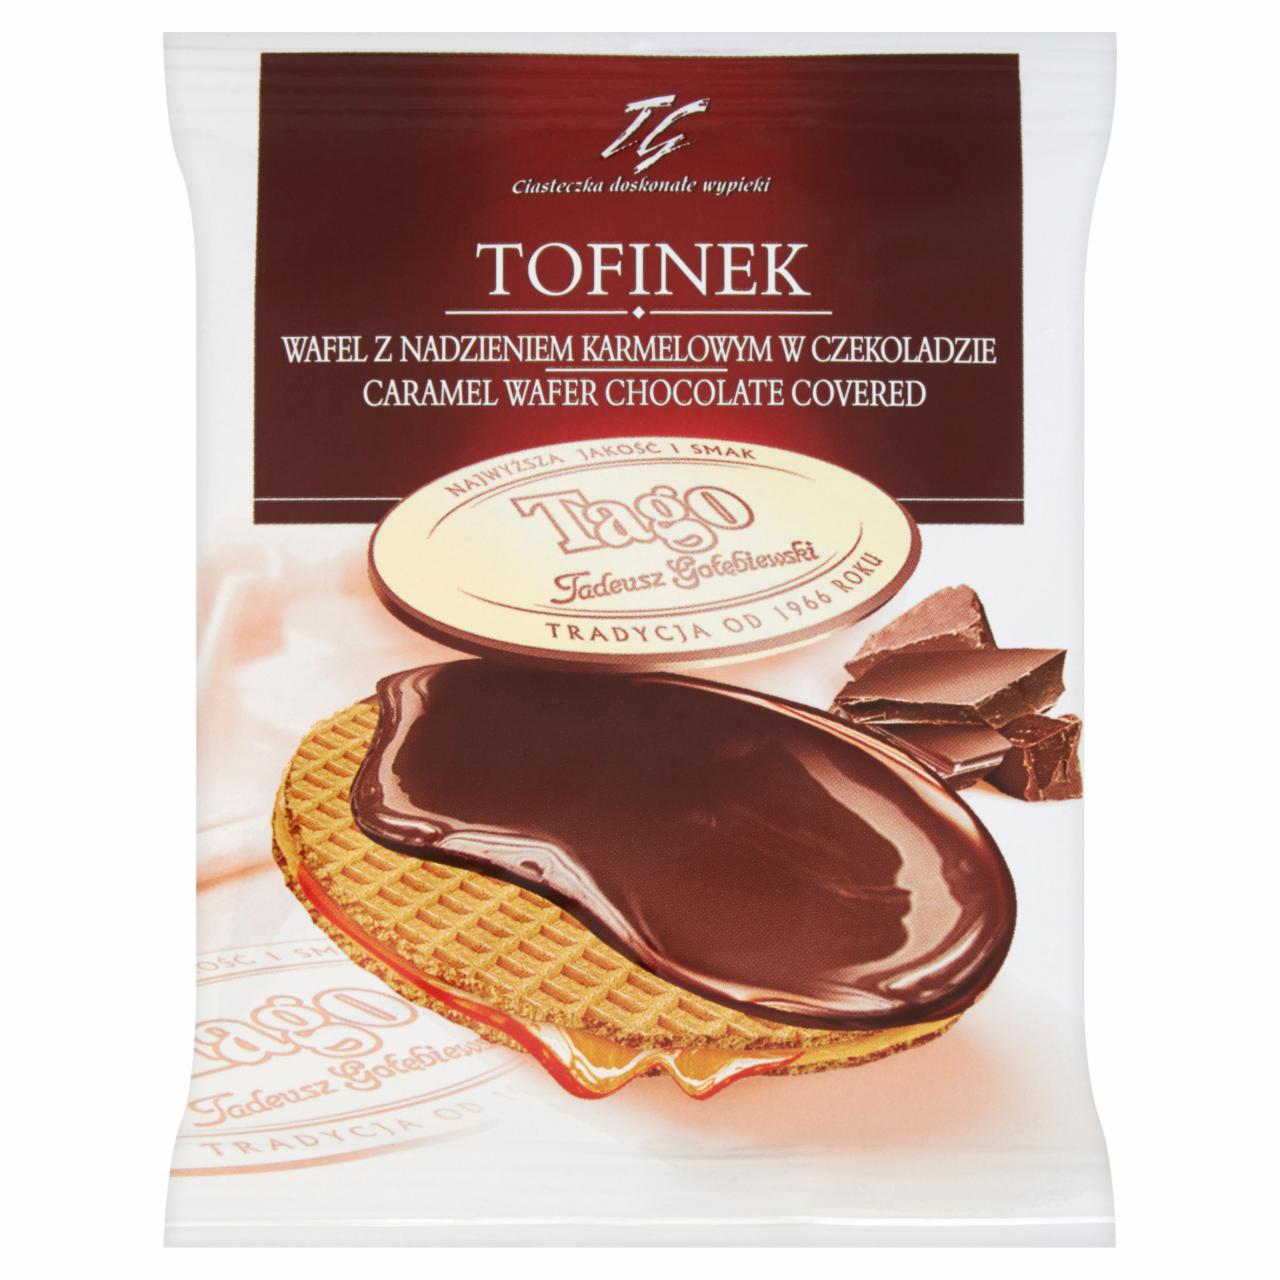 Zdjęcia - Tago Tofinek Wafel z nadzieniem karmelowym w czekoladzie 50 g